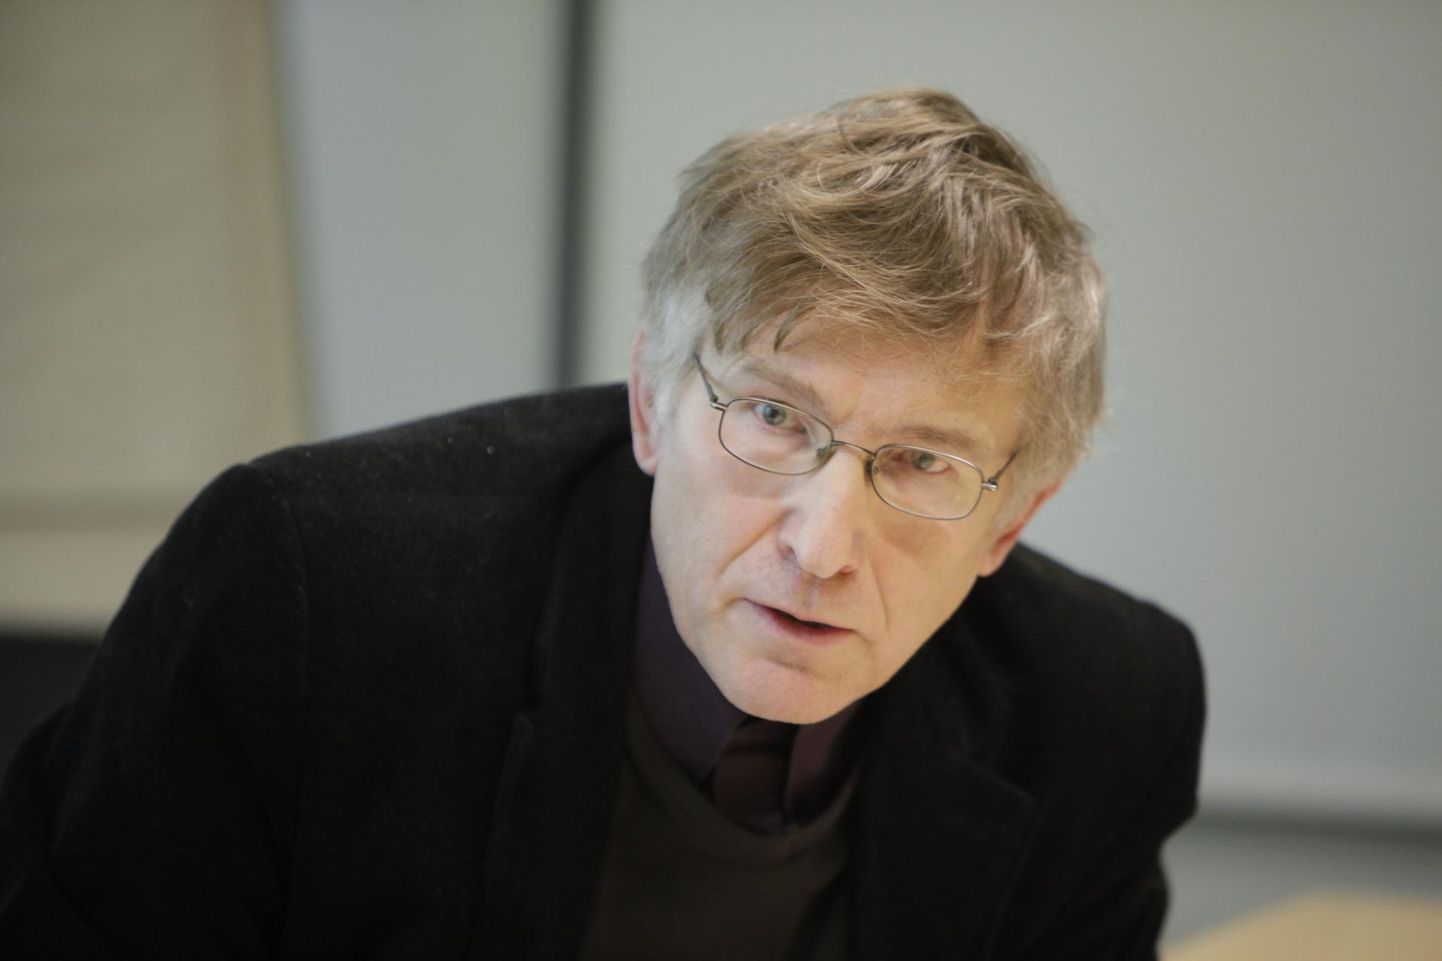 Arhitekt ja endine poliitik Ignar Fjuk